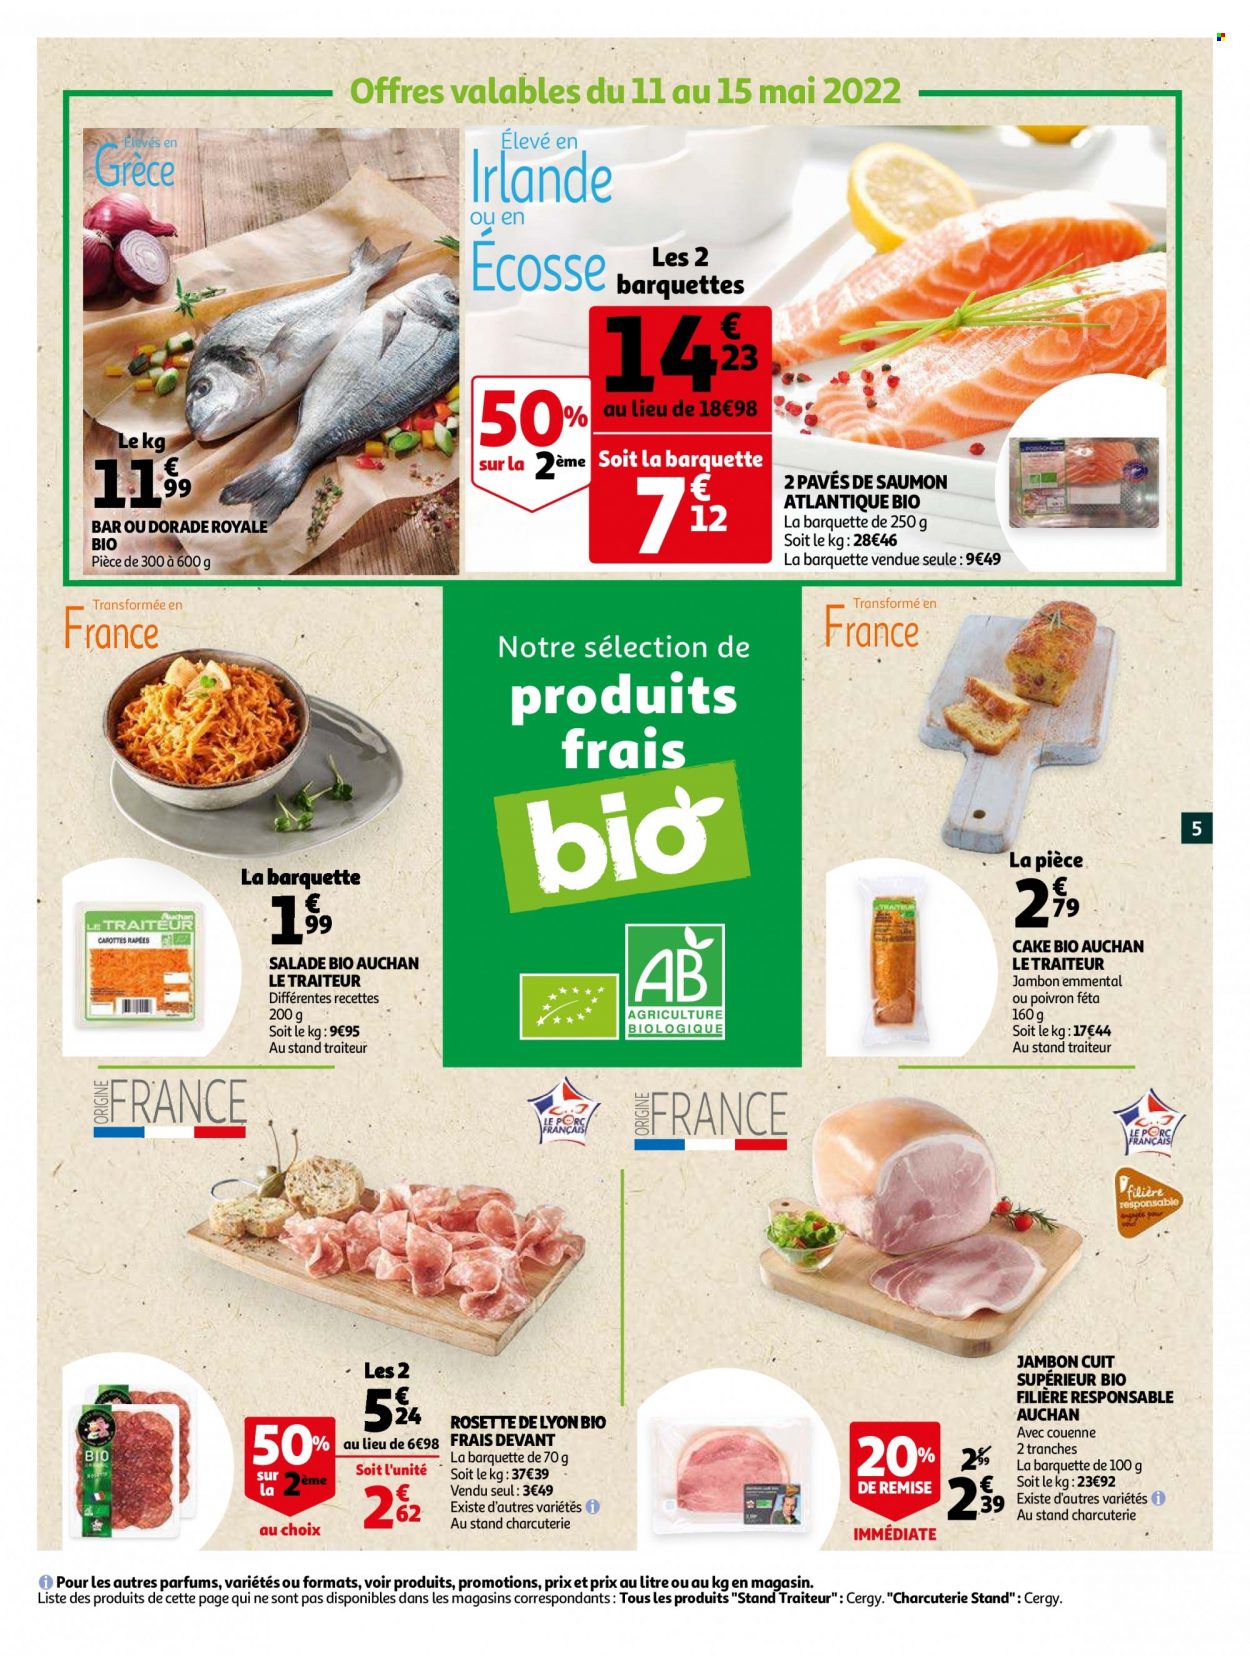 thumbnail - Catalogue Auchan - 11/05/2022 - 24/05/2022 - Produits soldés - salade, carotte, poivrons, saumon, dorade, pavés de saumon, rosette, rosette de Lyon, féta, fromage. Page 5.